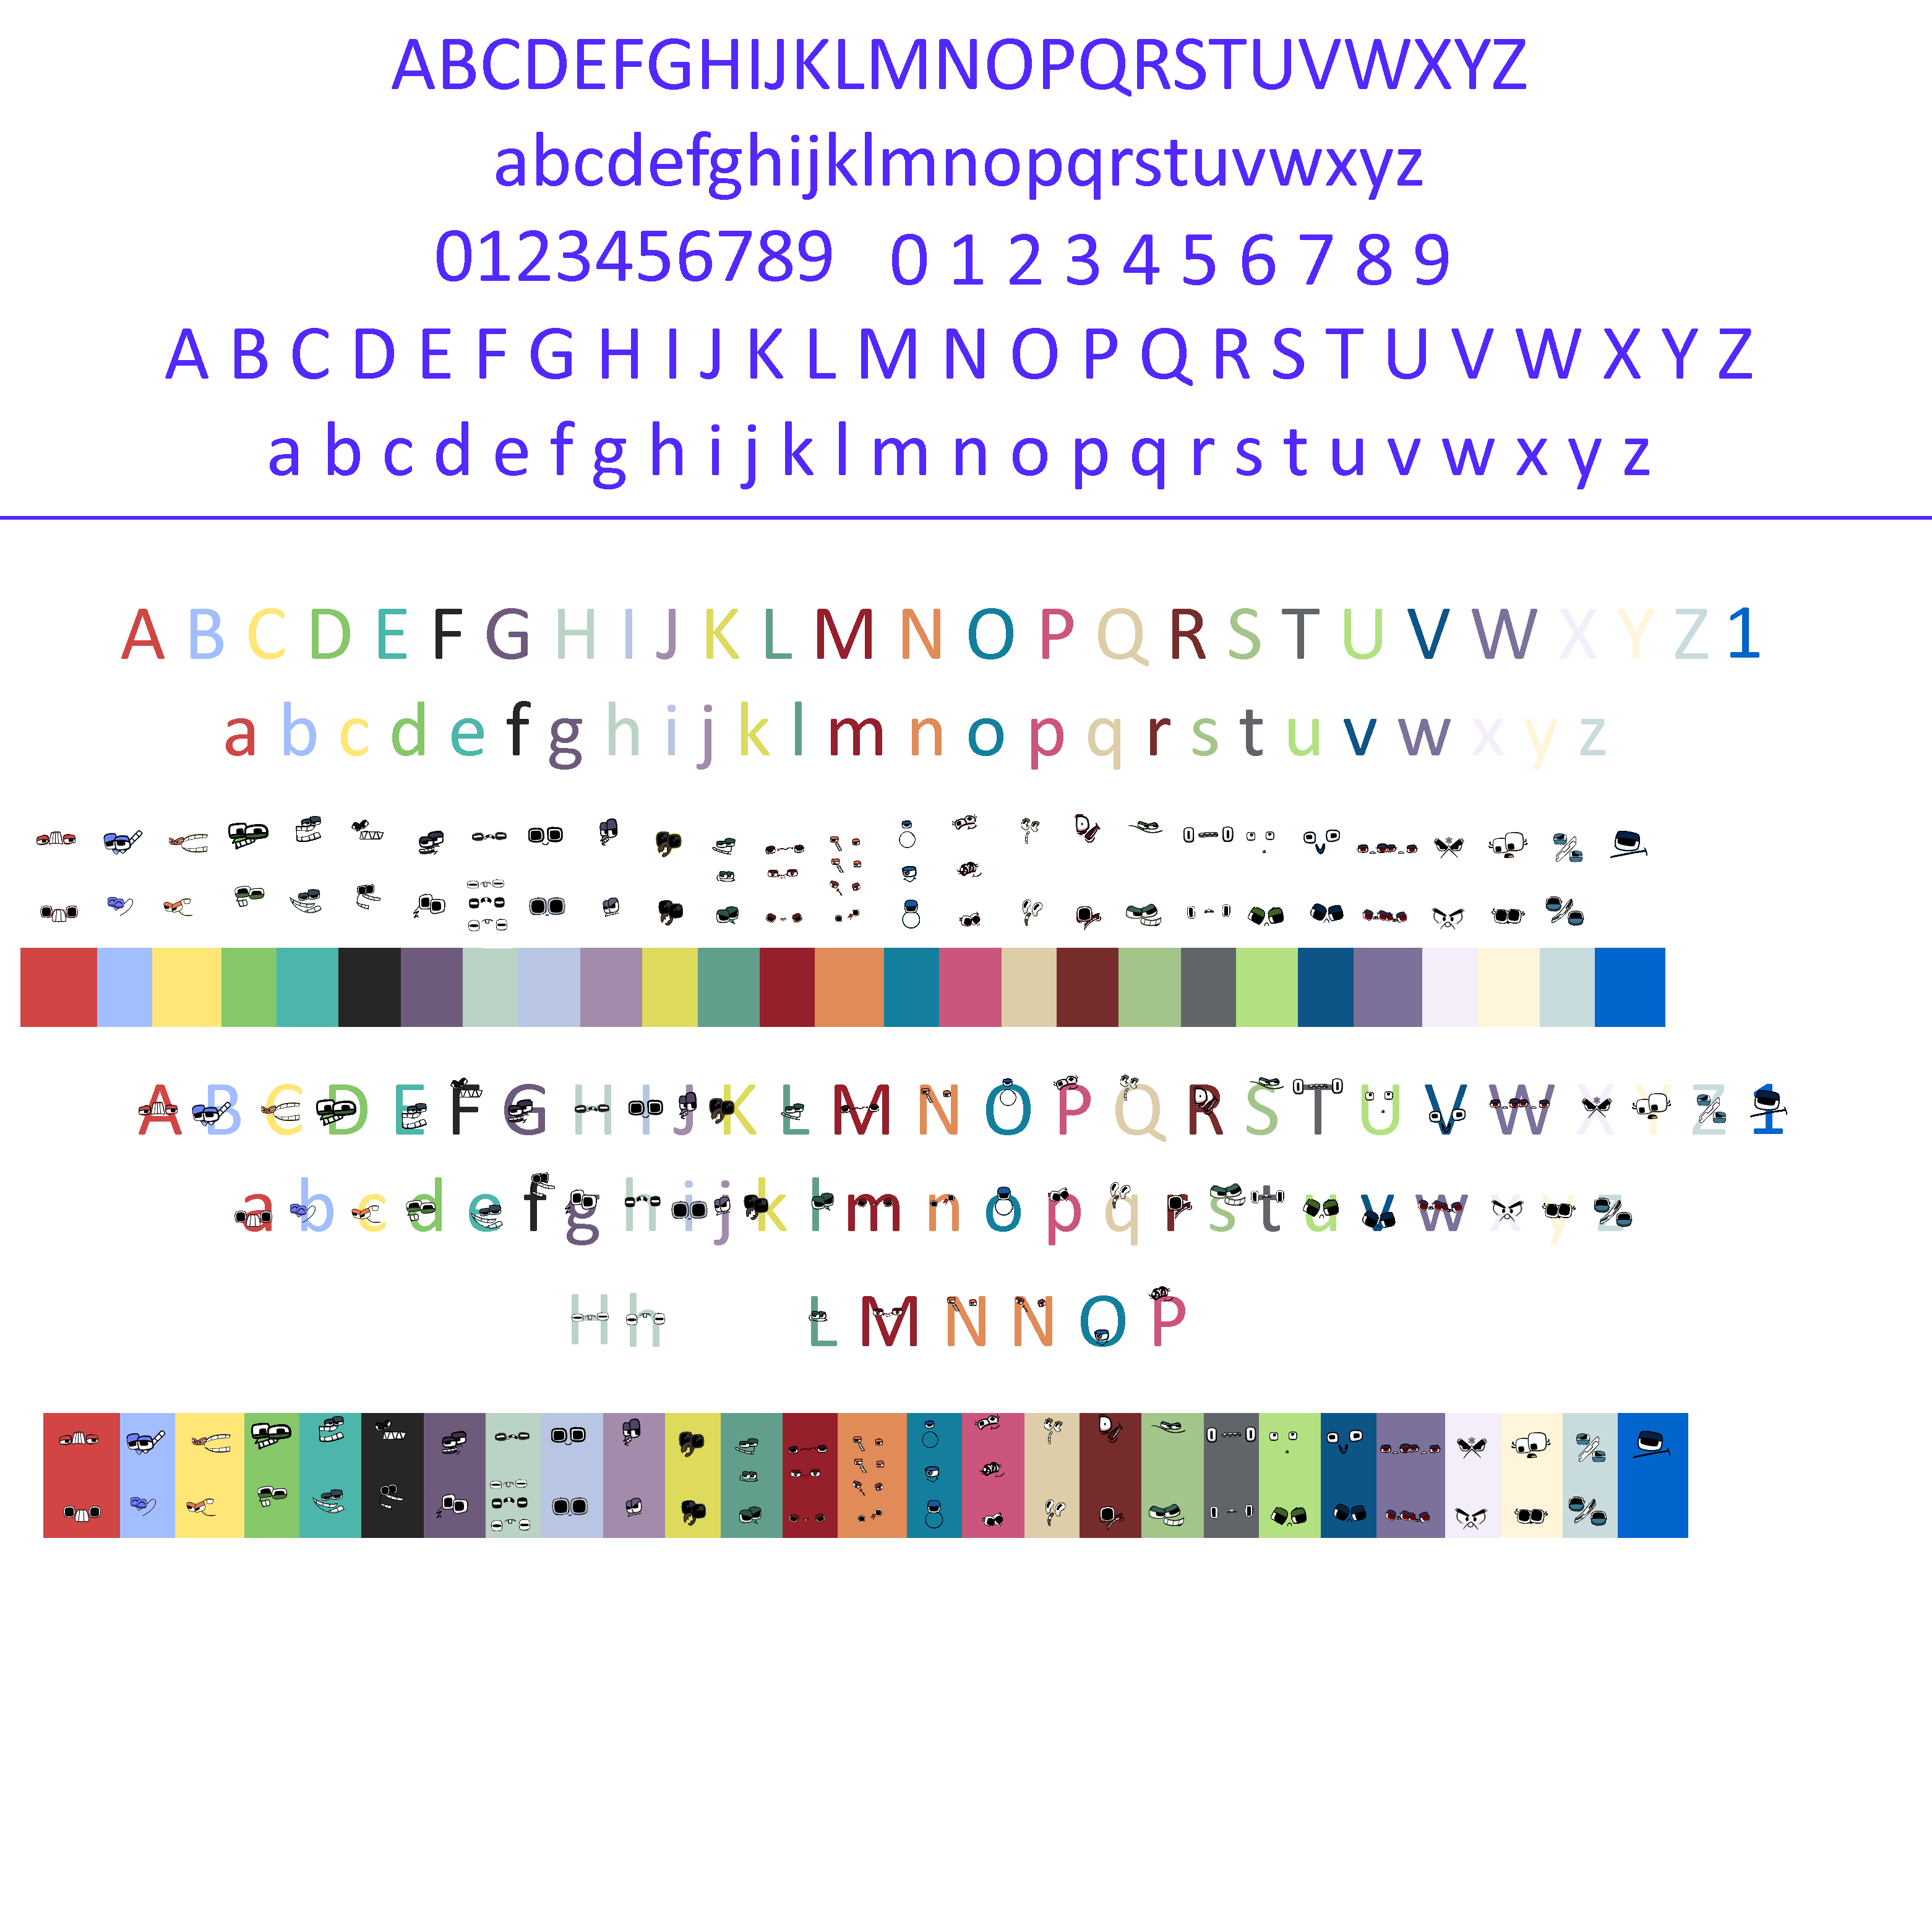 Alphabet Lore - 5 x 6 = 30 Grid by Abbysek on DeviantArt